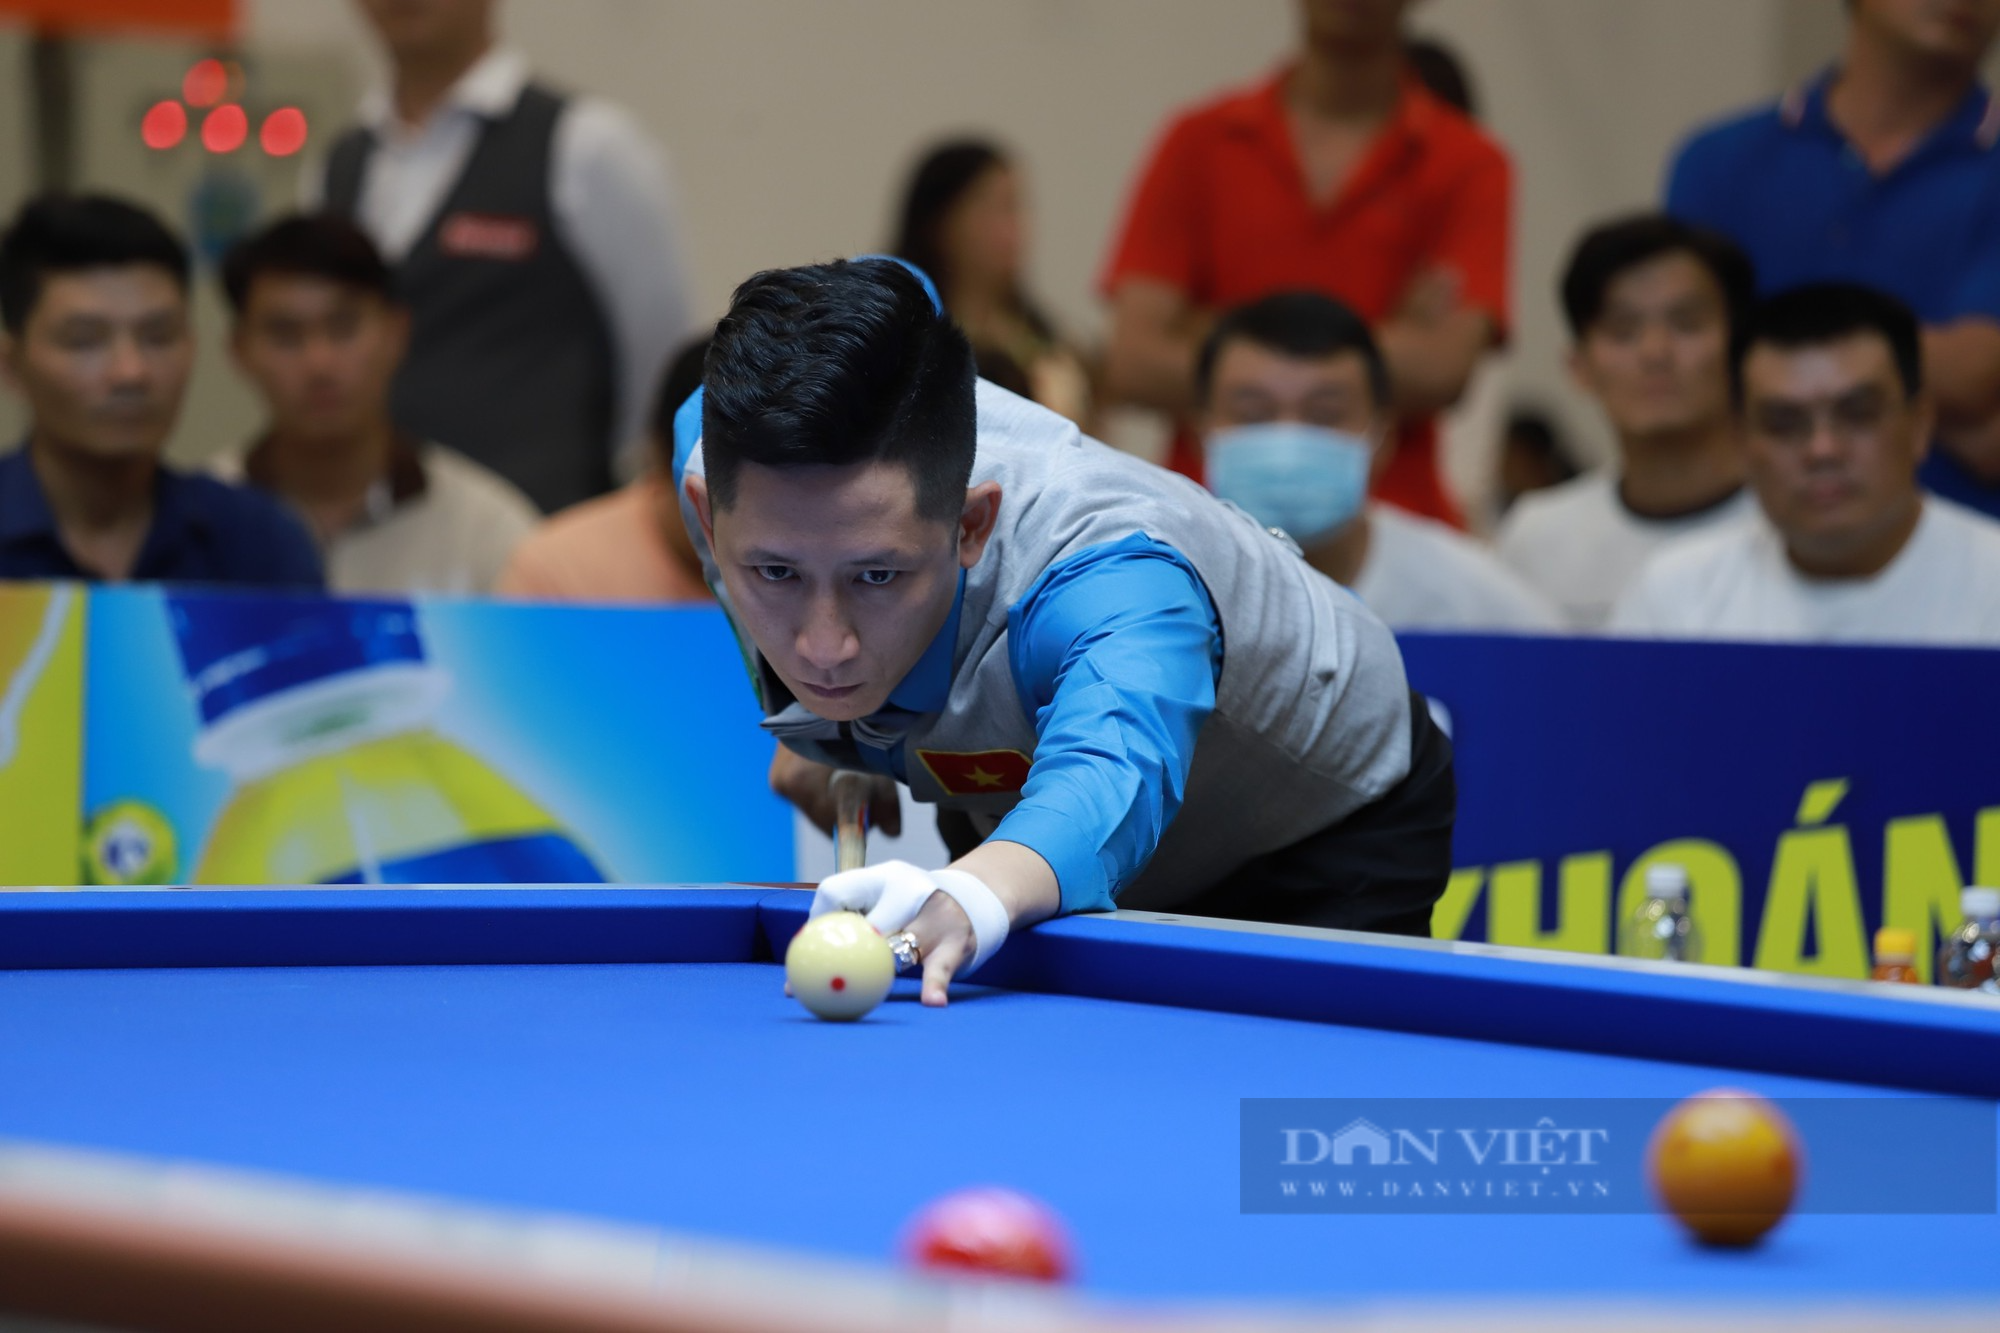 Trần Quyết Chiến bị loại sớm, Bao Phương Vinh vô địch giải Billiards quốc tế Bình Dương - Ảnh 1.